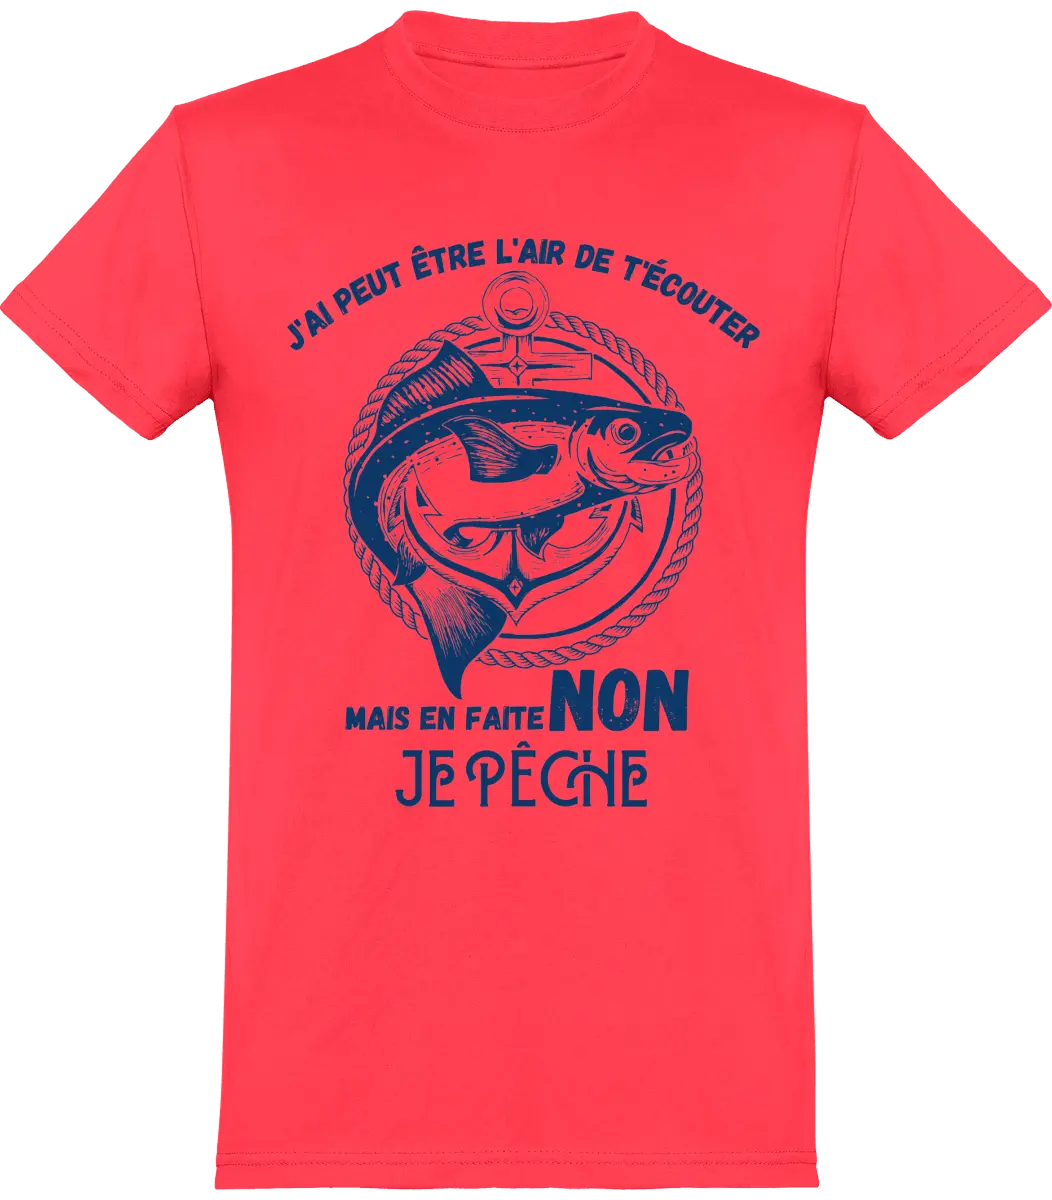 T-shirt pêcheur "j'ai peut être l'air de t'écouter mais en faite non je pêche" | Mixte - French Humour